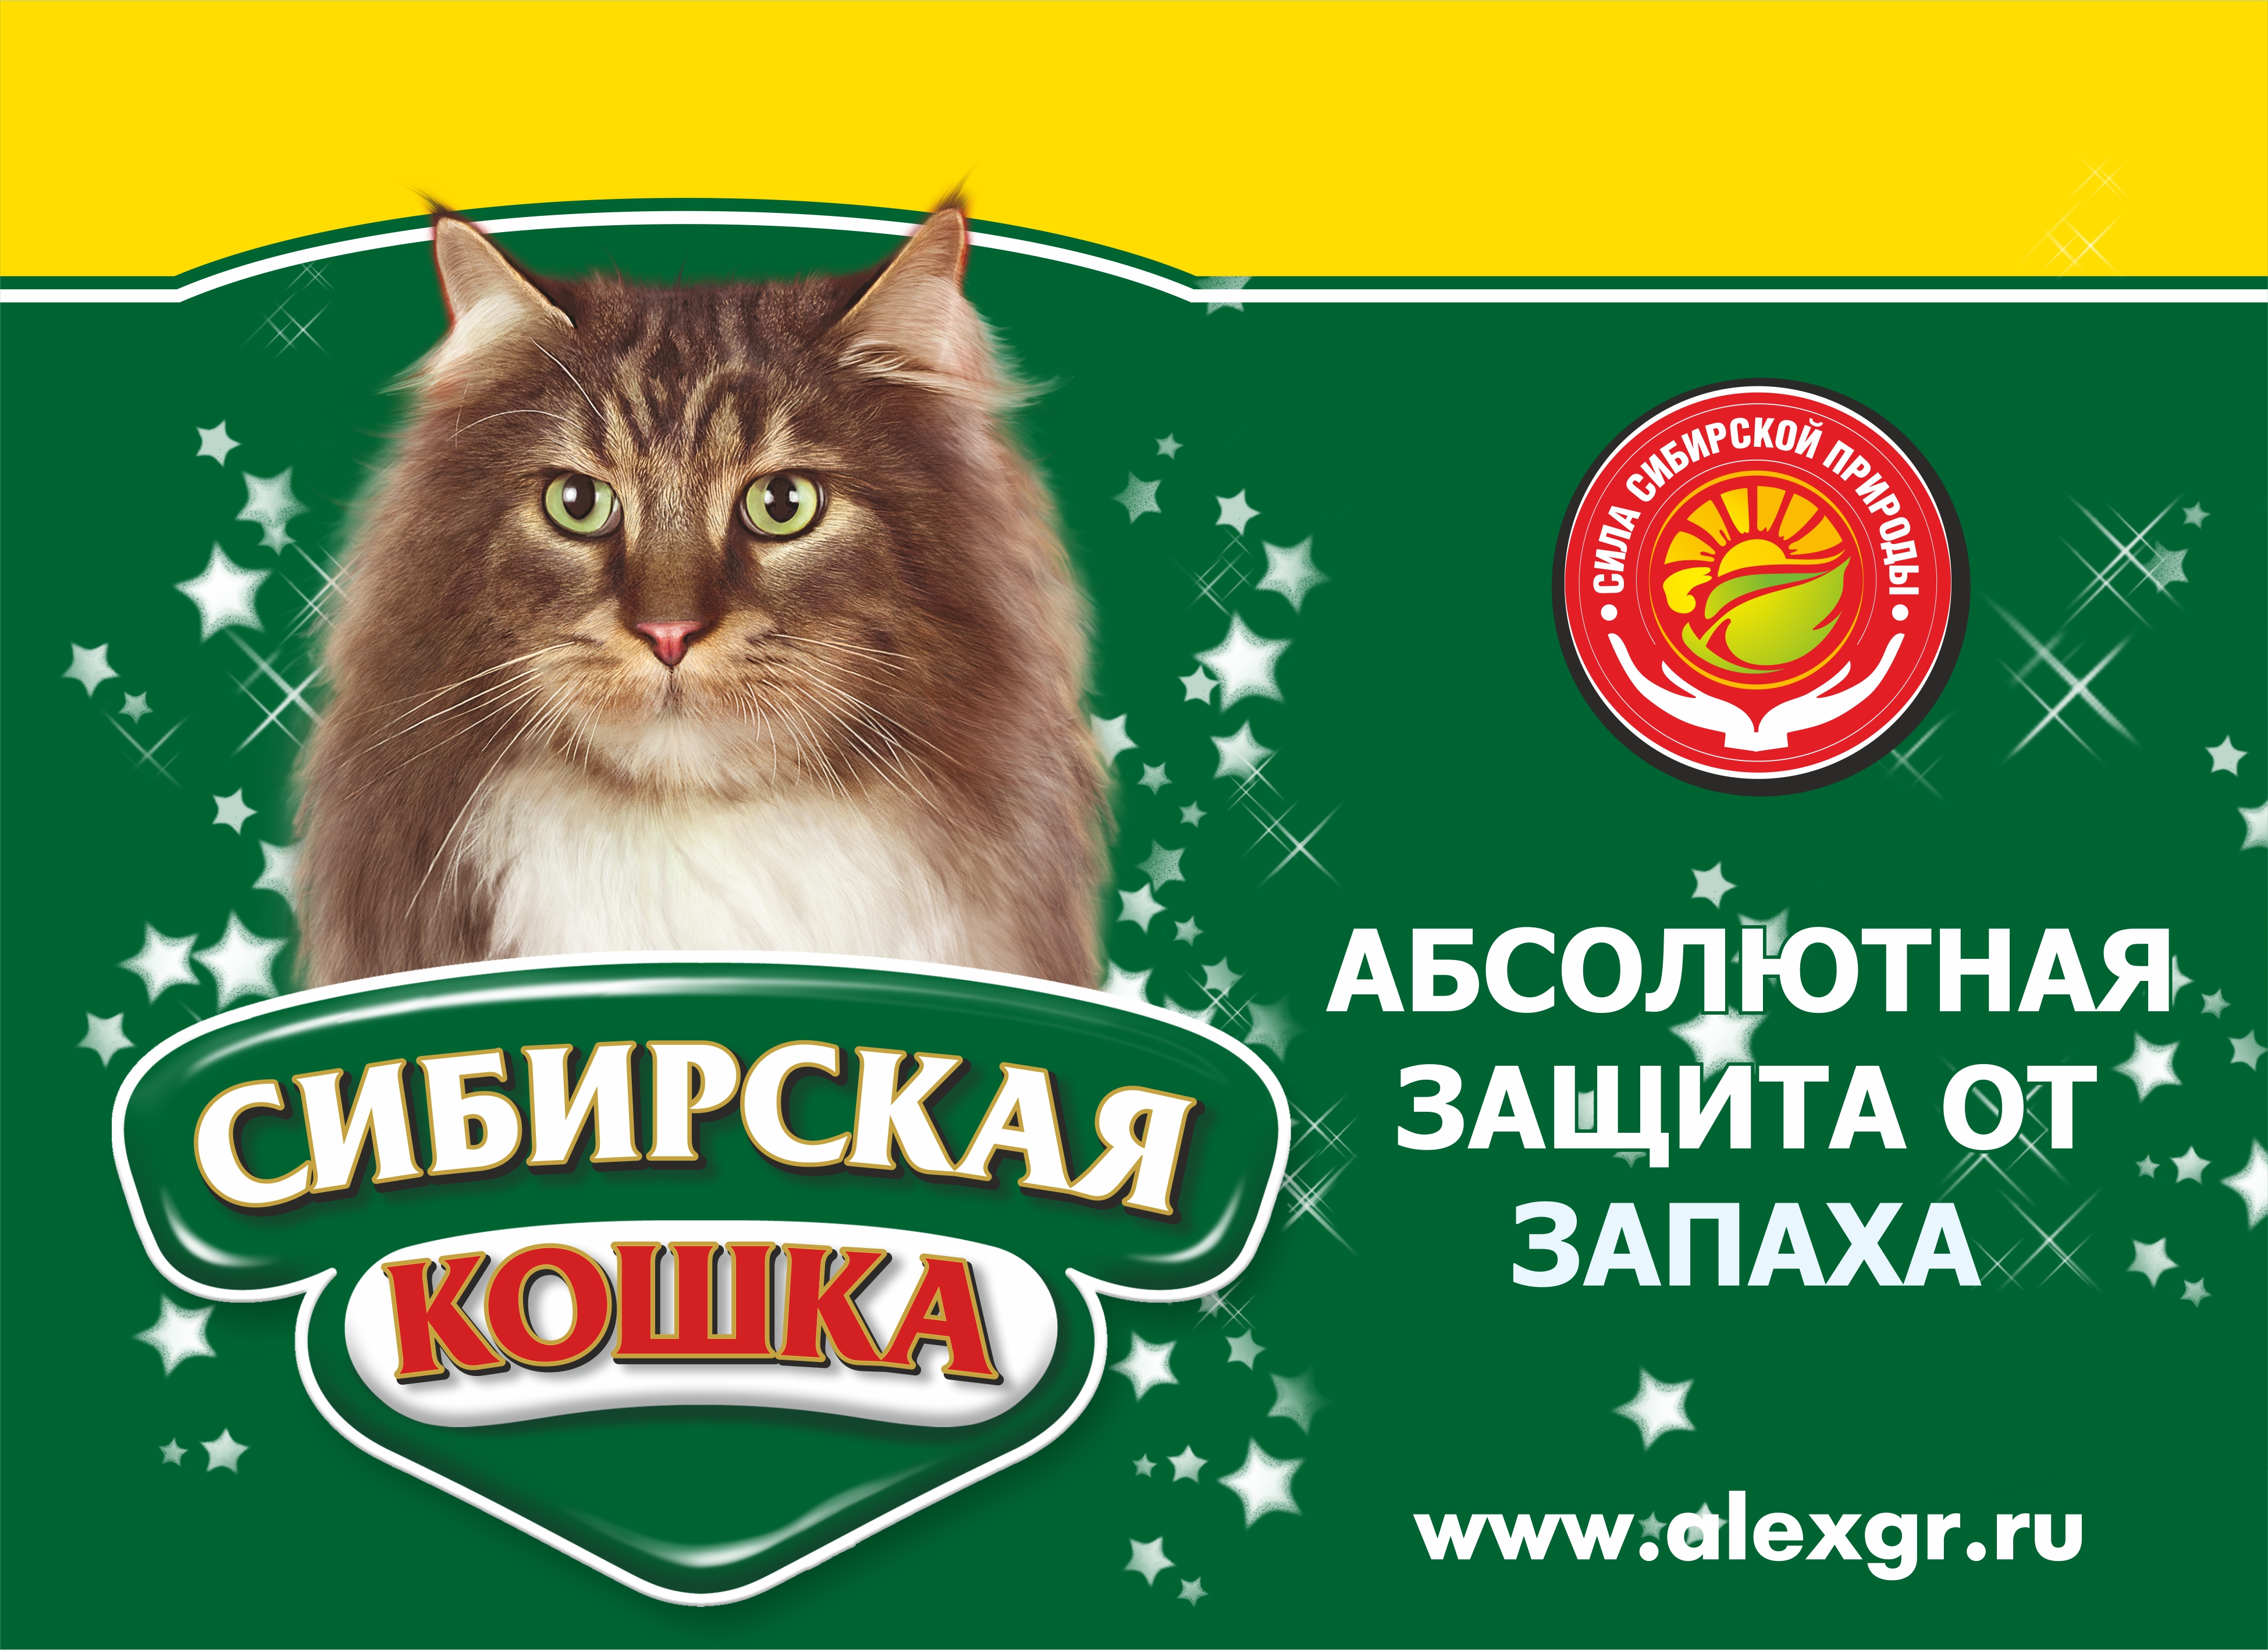 Логотип Сибирская кошка